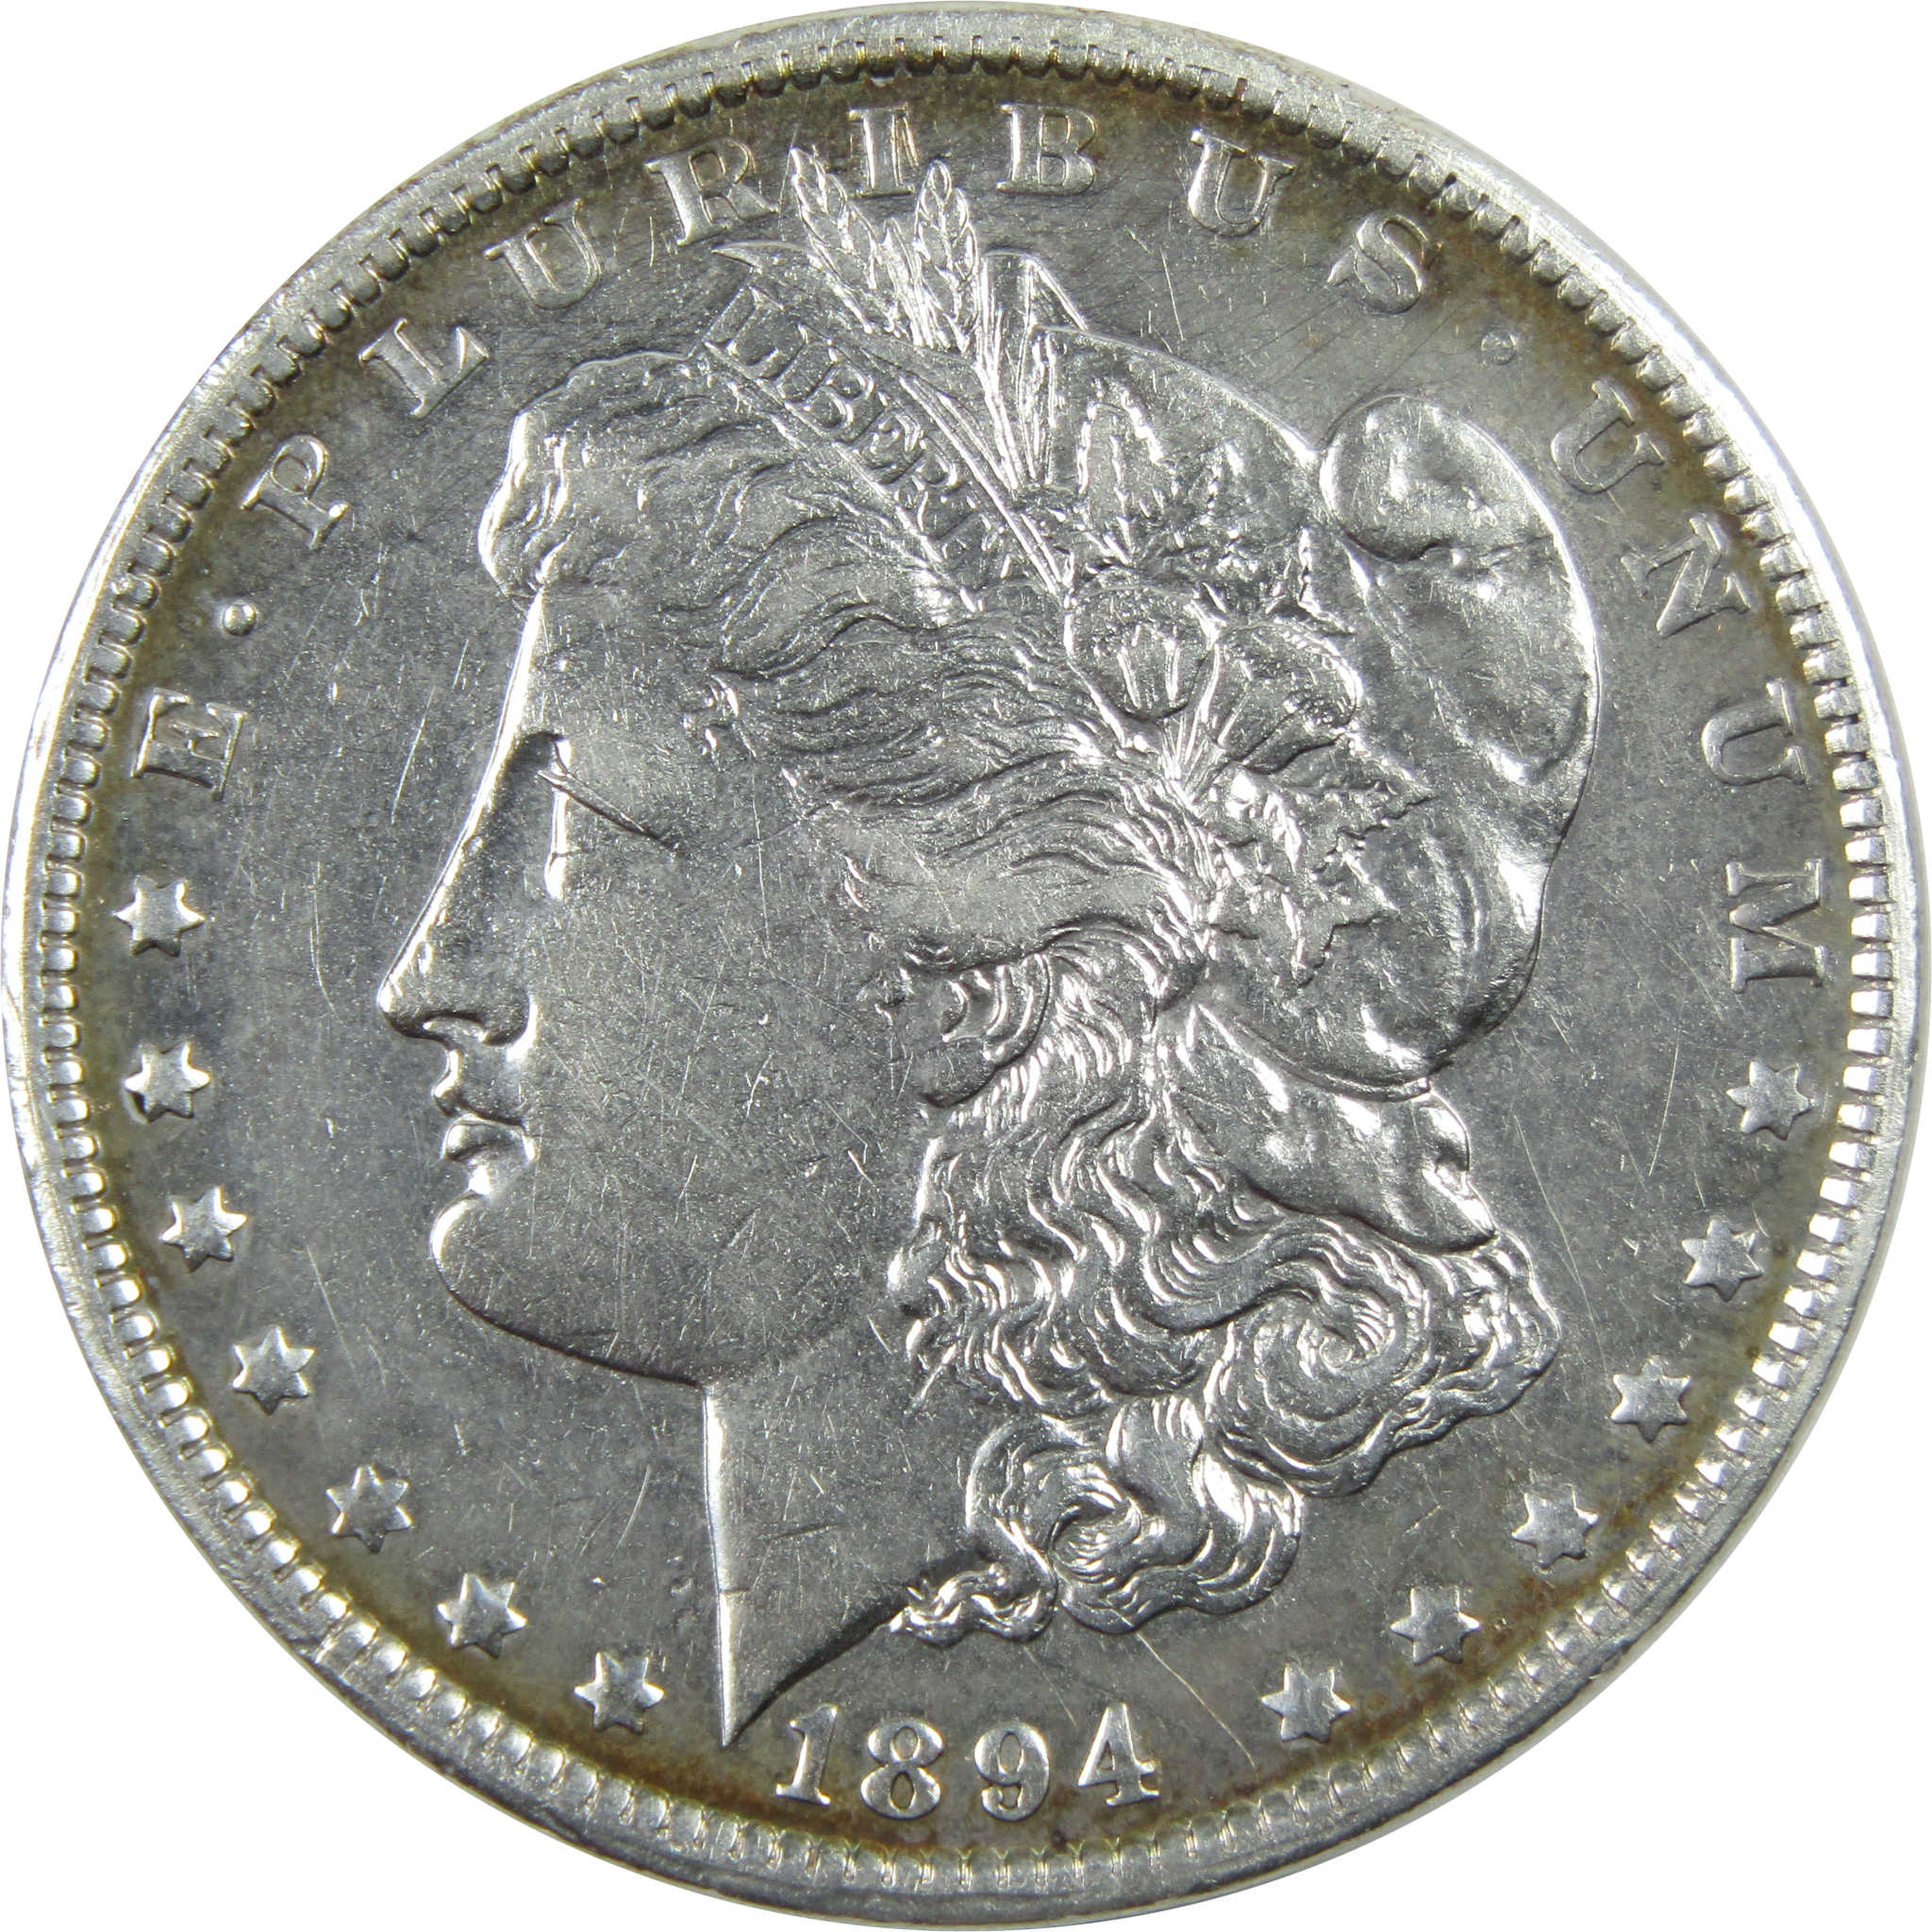 1894 O Morgan Dollar XF EF Extremely Fine Details Silver $1 SKU:I11701 - Morgan coin - Morgan silver dollar - Morgan silver dollar for sale - Profile Coins &amp; Collectibles